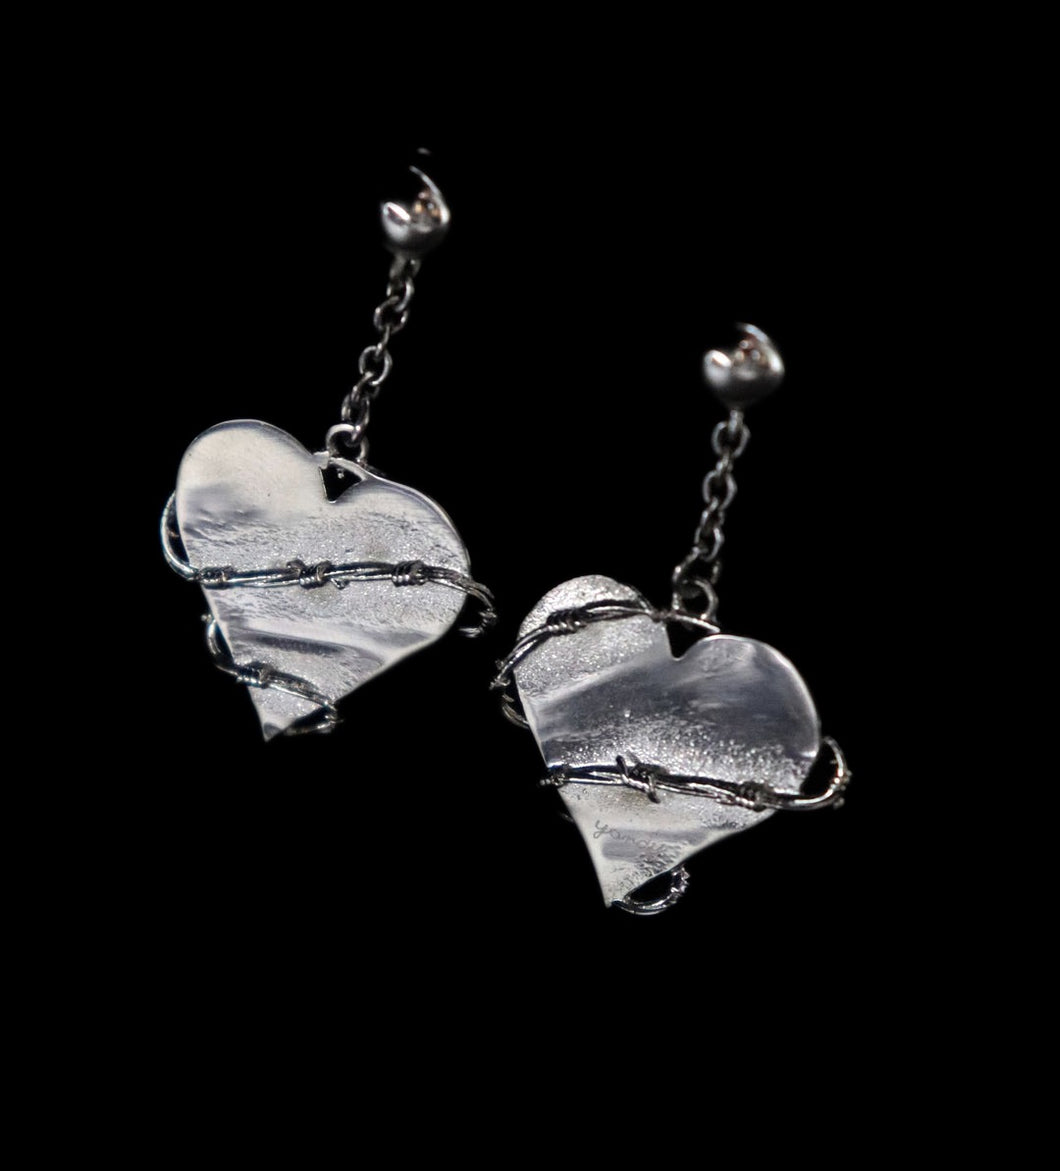 Silver Scarred Heart Earrings - Fashion Jewelry by Yordy.